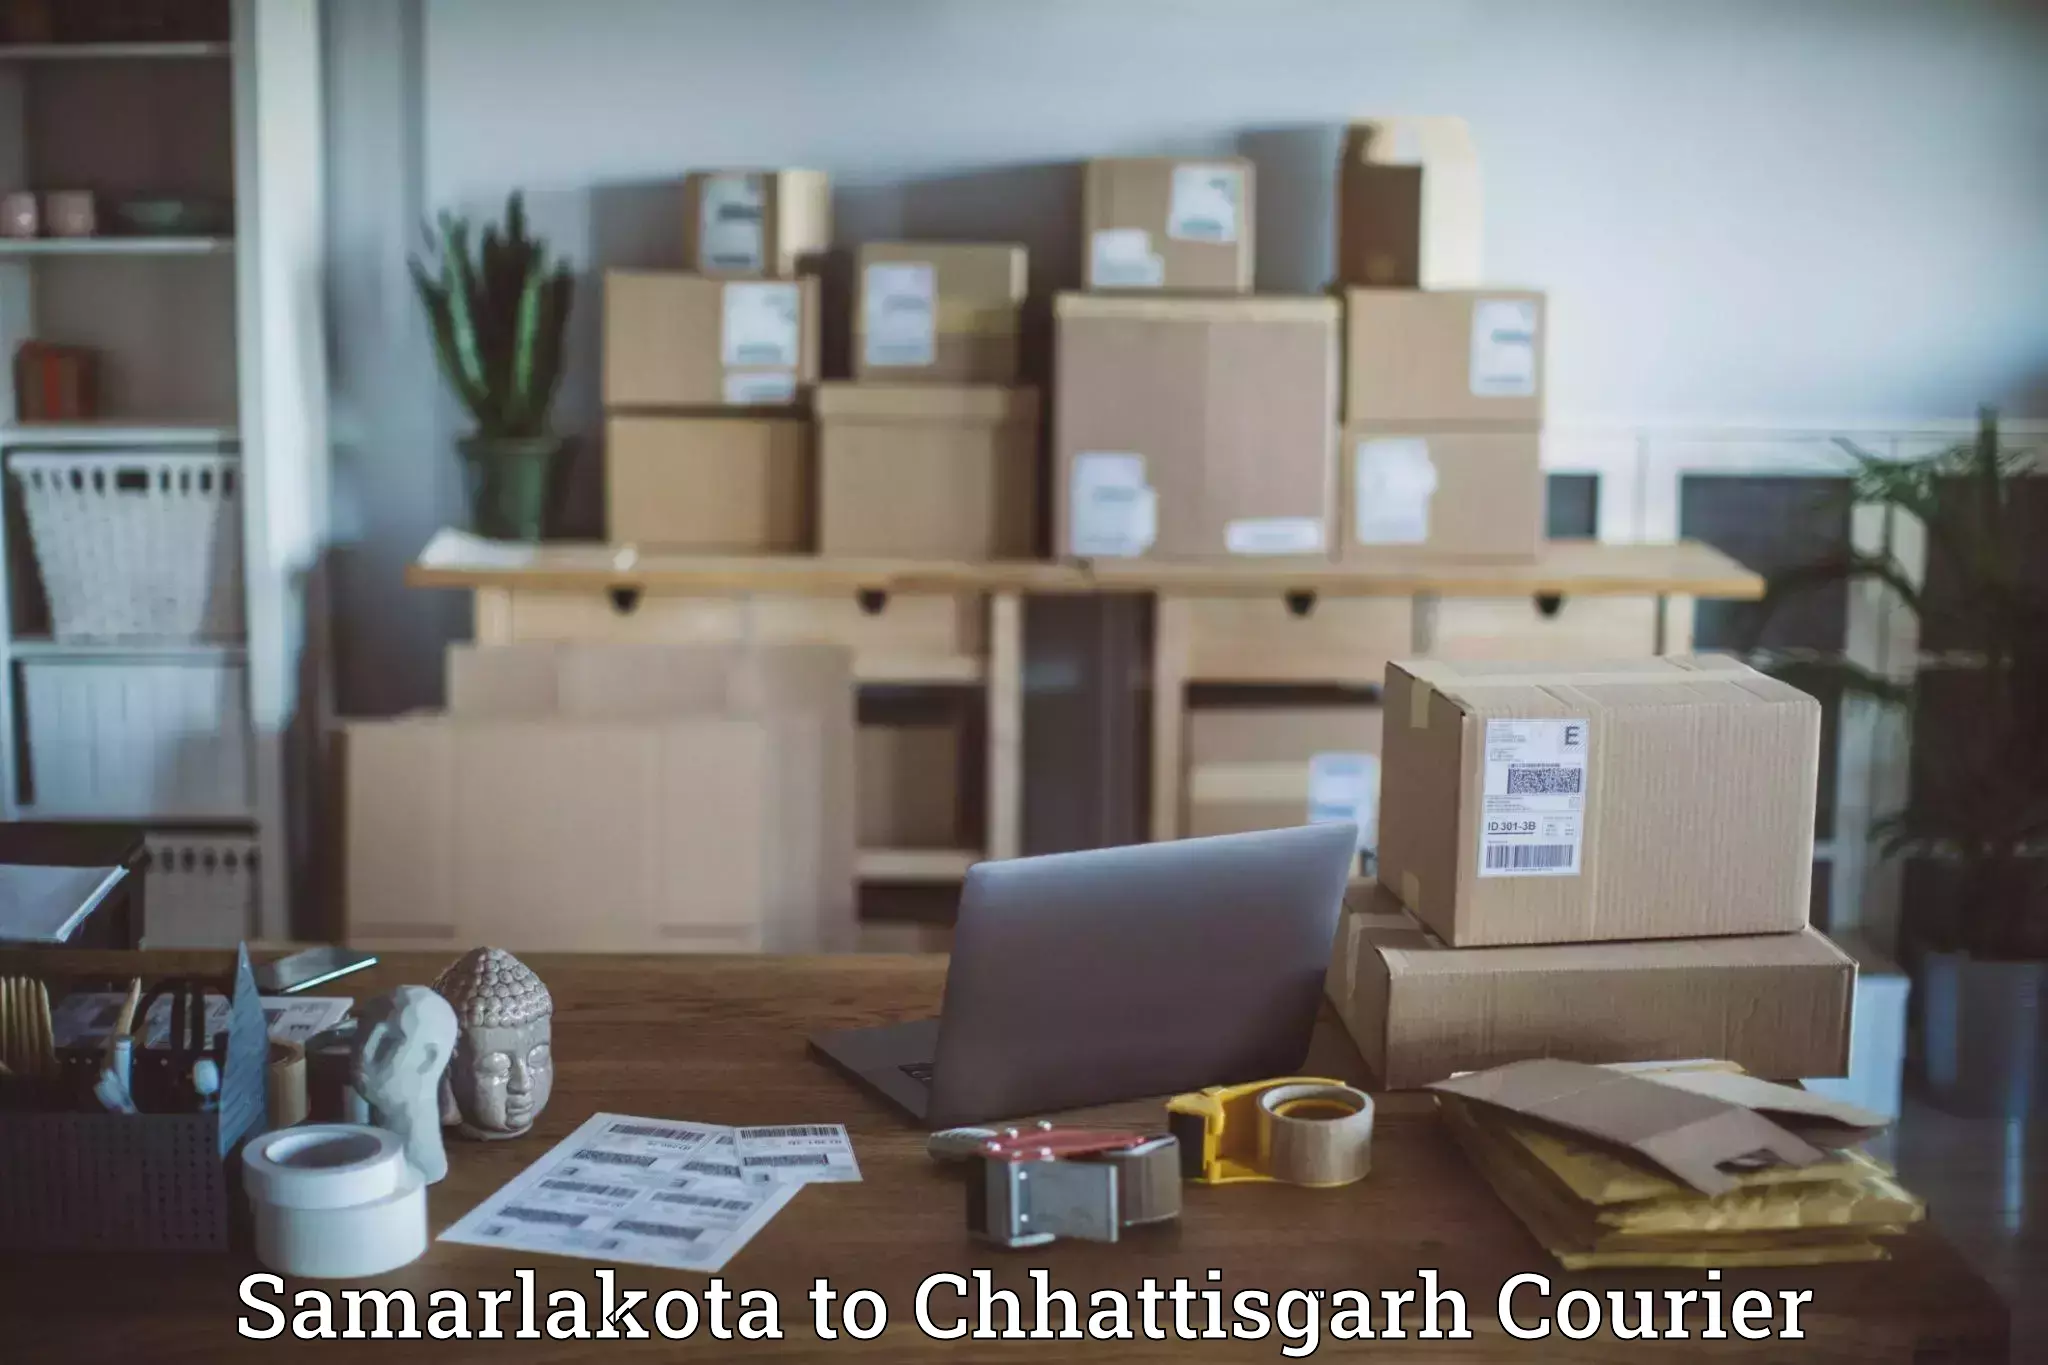 Courier service partnerships Samarlakota to Raigarh